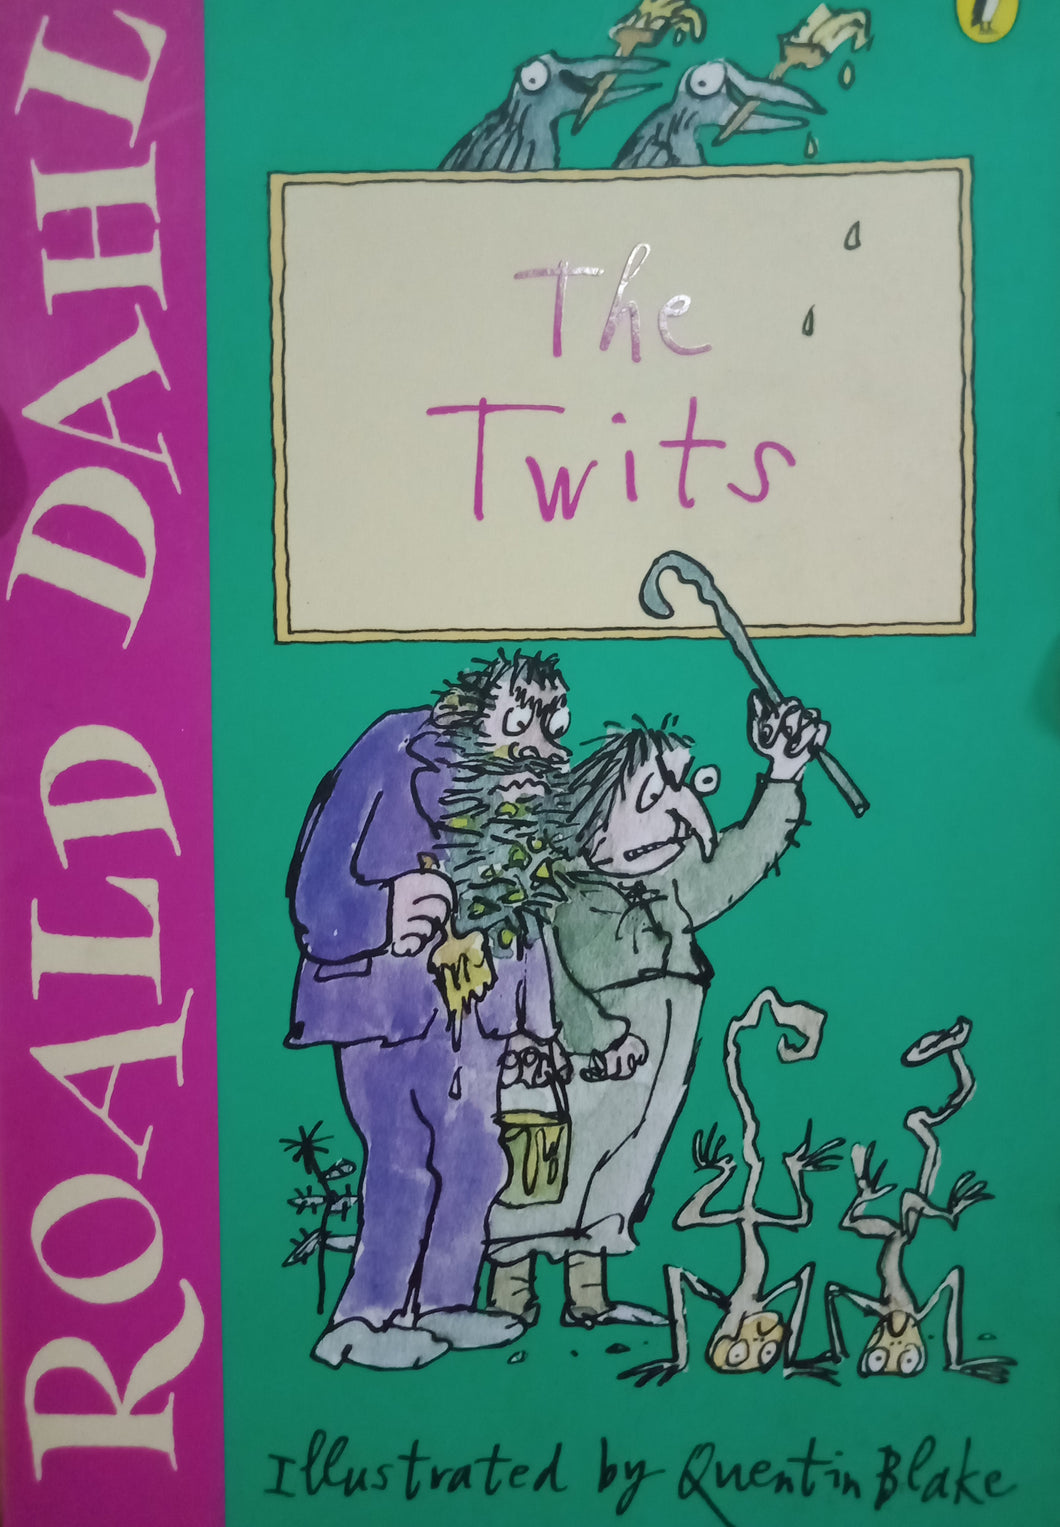 The Twist by Roald Dahl